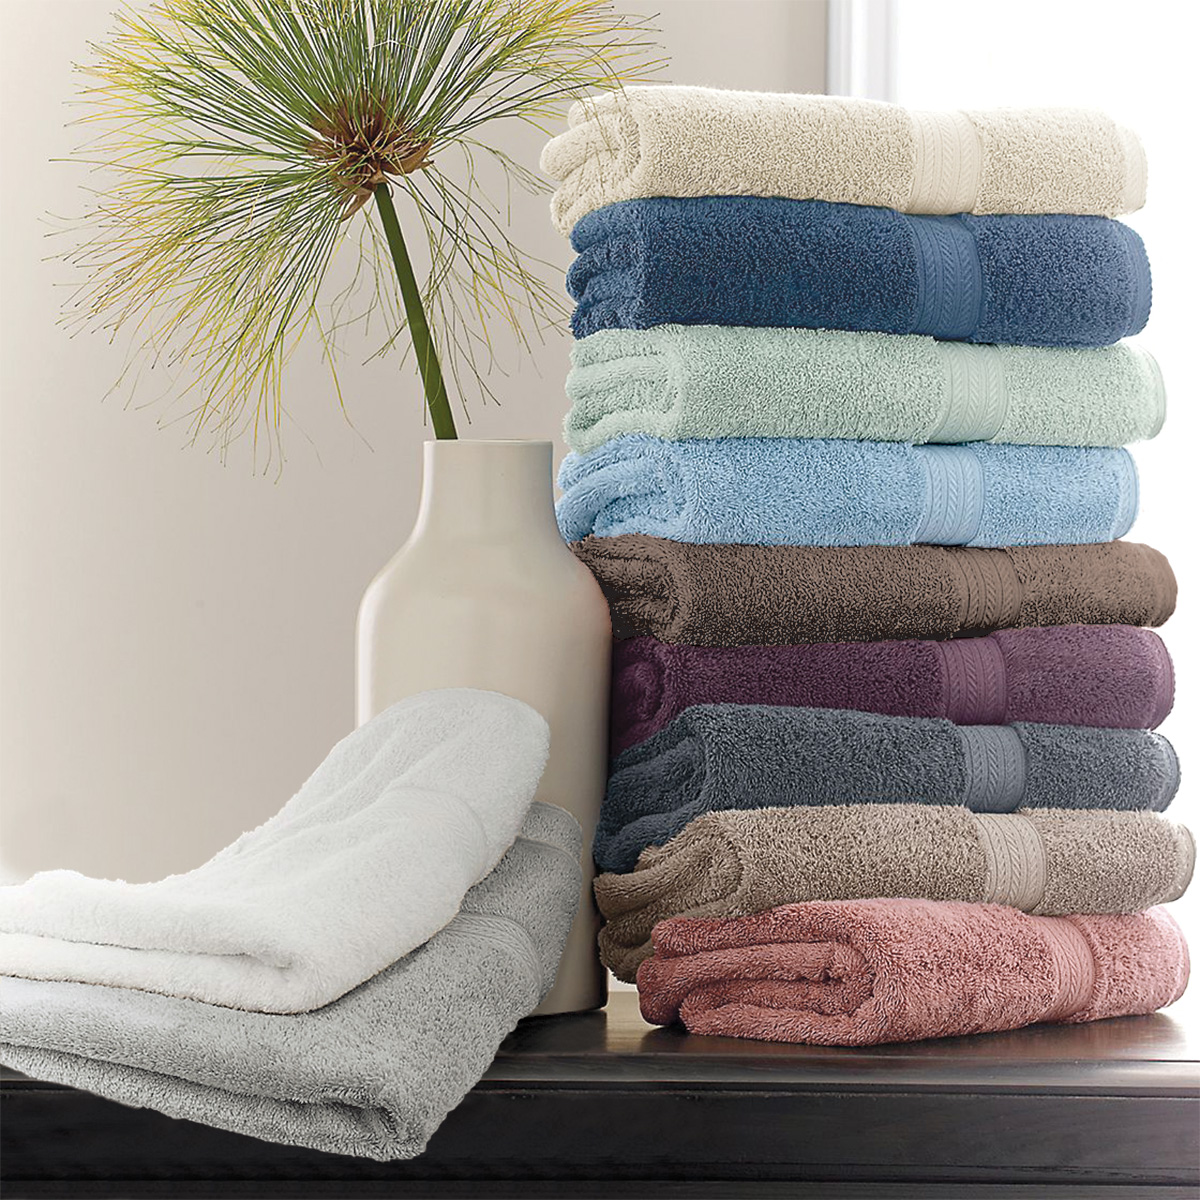 https://rizonhome.com/wp-content/uploads/2020/04/CH-Towel-RENAISSANCE-Lifestyle-A.jpg